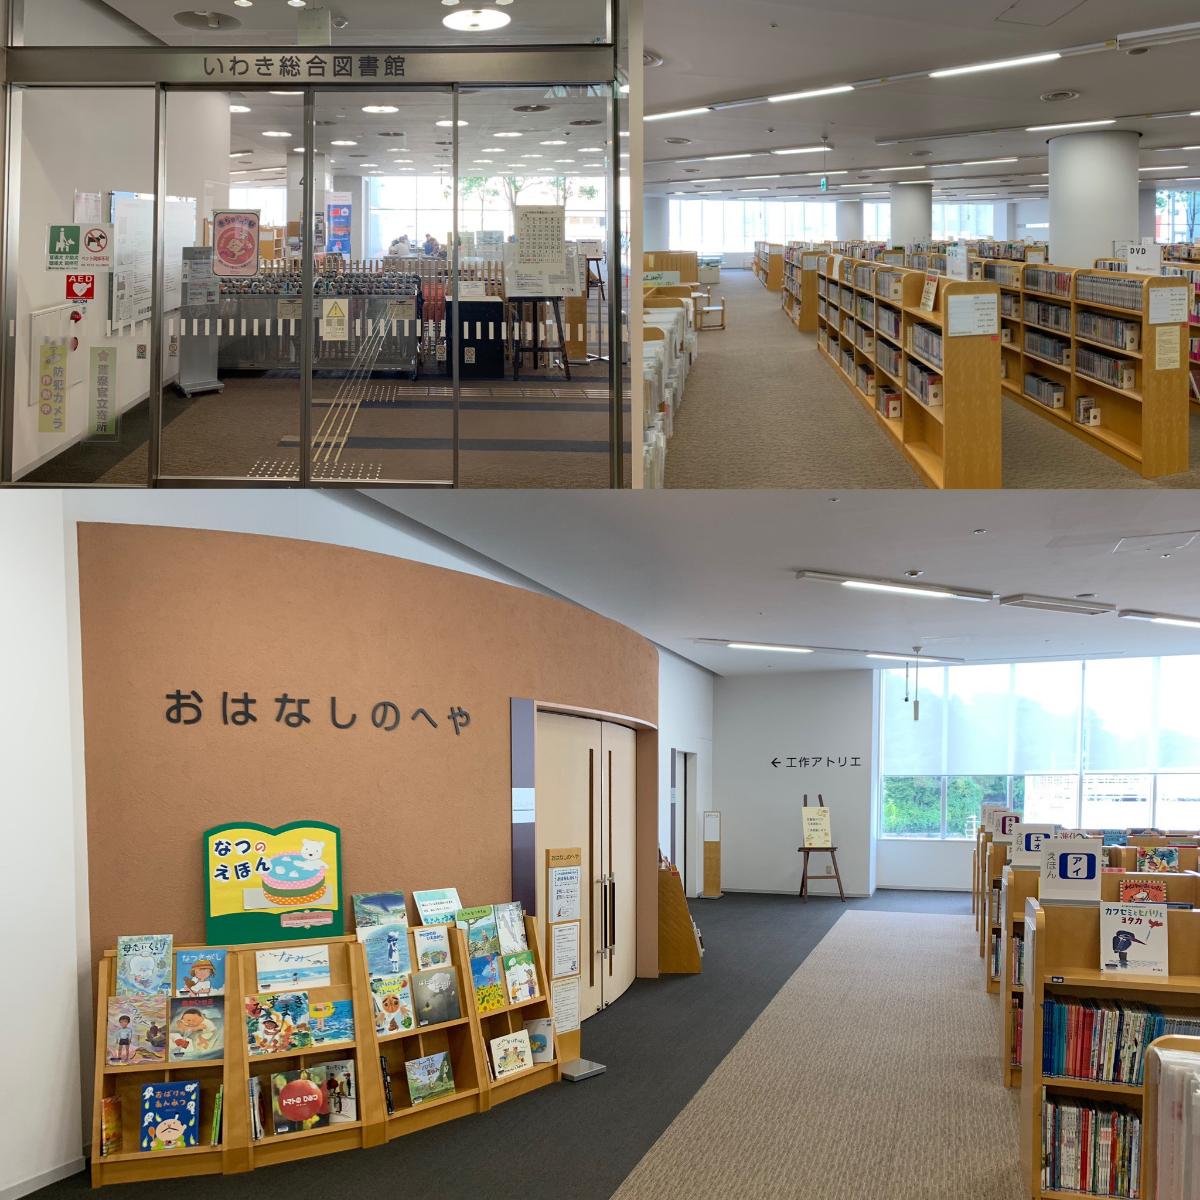 いわき市平幕ノ内　２期 土地 いわき総合図書館（ラトブ内）まで約1.3km～1.6km（徒歩17分～20分）　いわきで一番本が揃っている場所。それがいわき総合図書館。ラトブ4F、5Fの2フロアにわたり、本好きはもちろん、仕事の調べものもできて何度も足を運びたくなる総合図書館です。中でもおすすめは定期的に開催している赤ちゃんへのお話し会など、読み聞かせ企画があります。これを楽しみにしている子育て世代の奥様たちの情報交換、交流の場にもなっています。